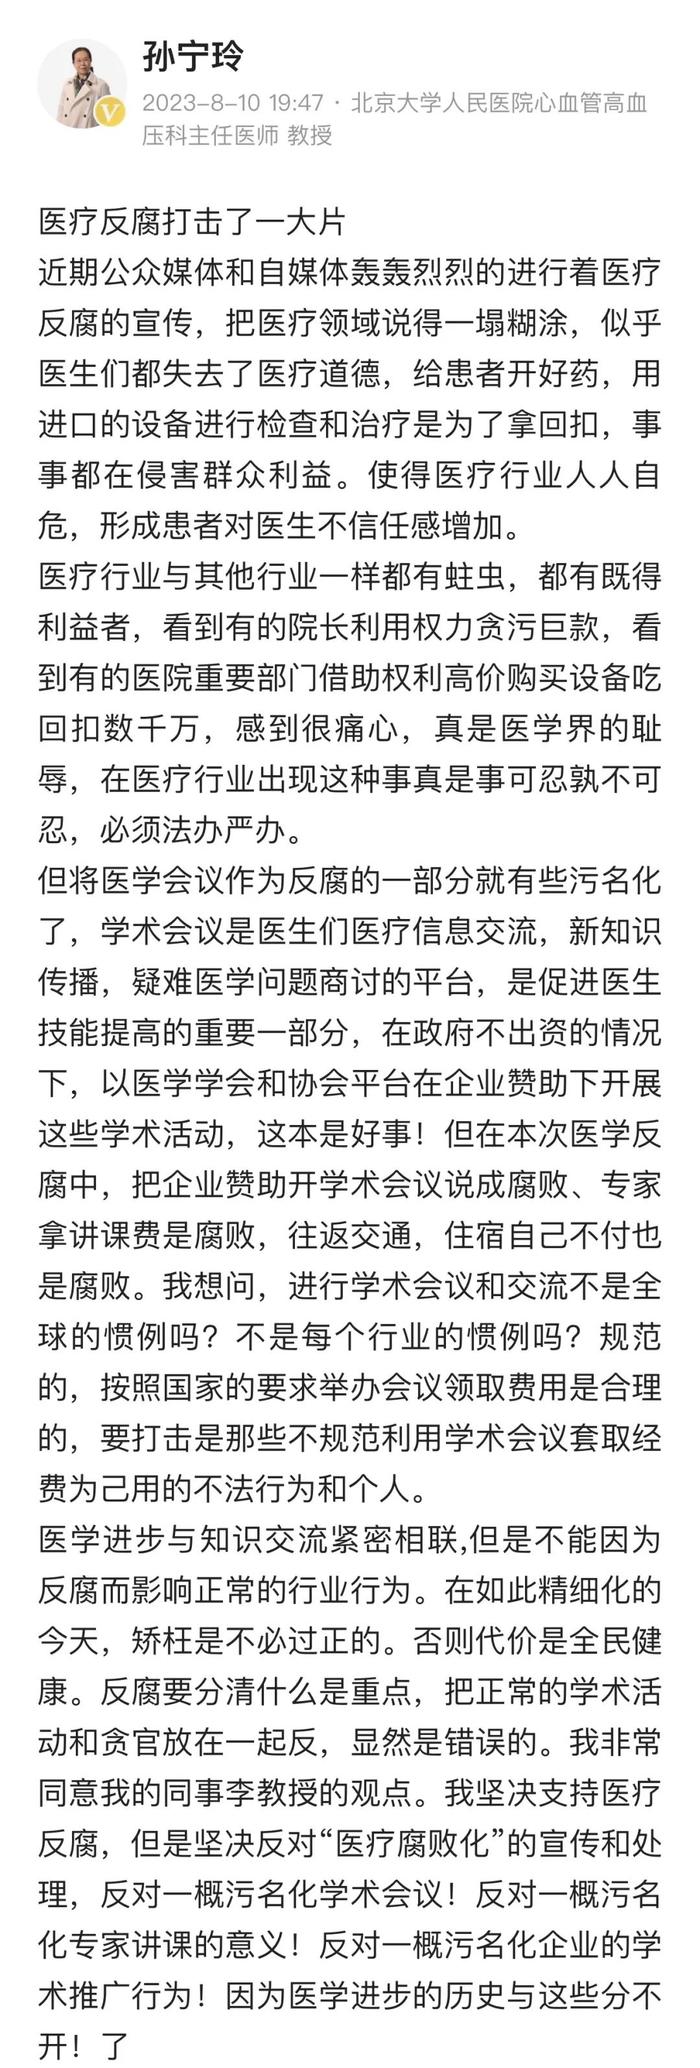 孙宁玲教授：支持反腐，但不必“污名化”医生群体